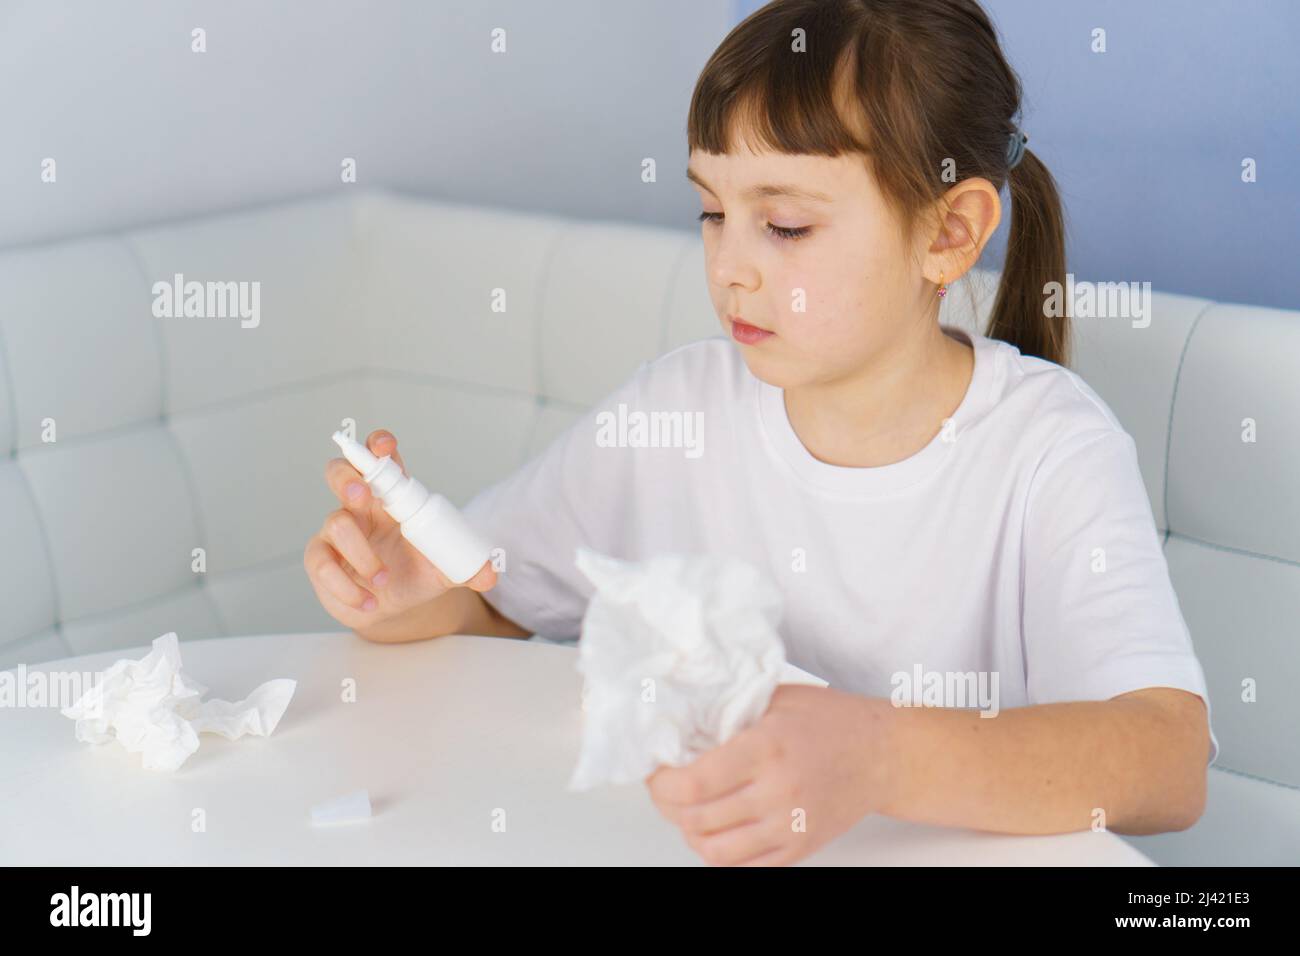 Bouteille de vaporisateur nasal et papier de soie dans les mains des filles. Traitement des allergies, des sinusites virales et bactériennes Banque D'Images